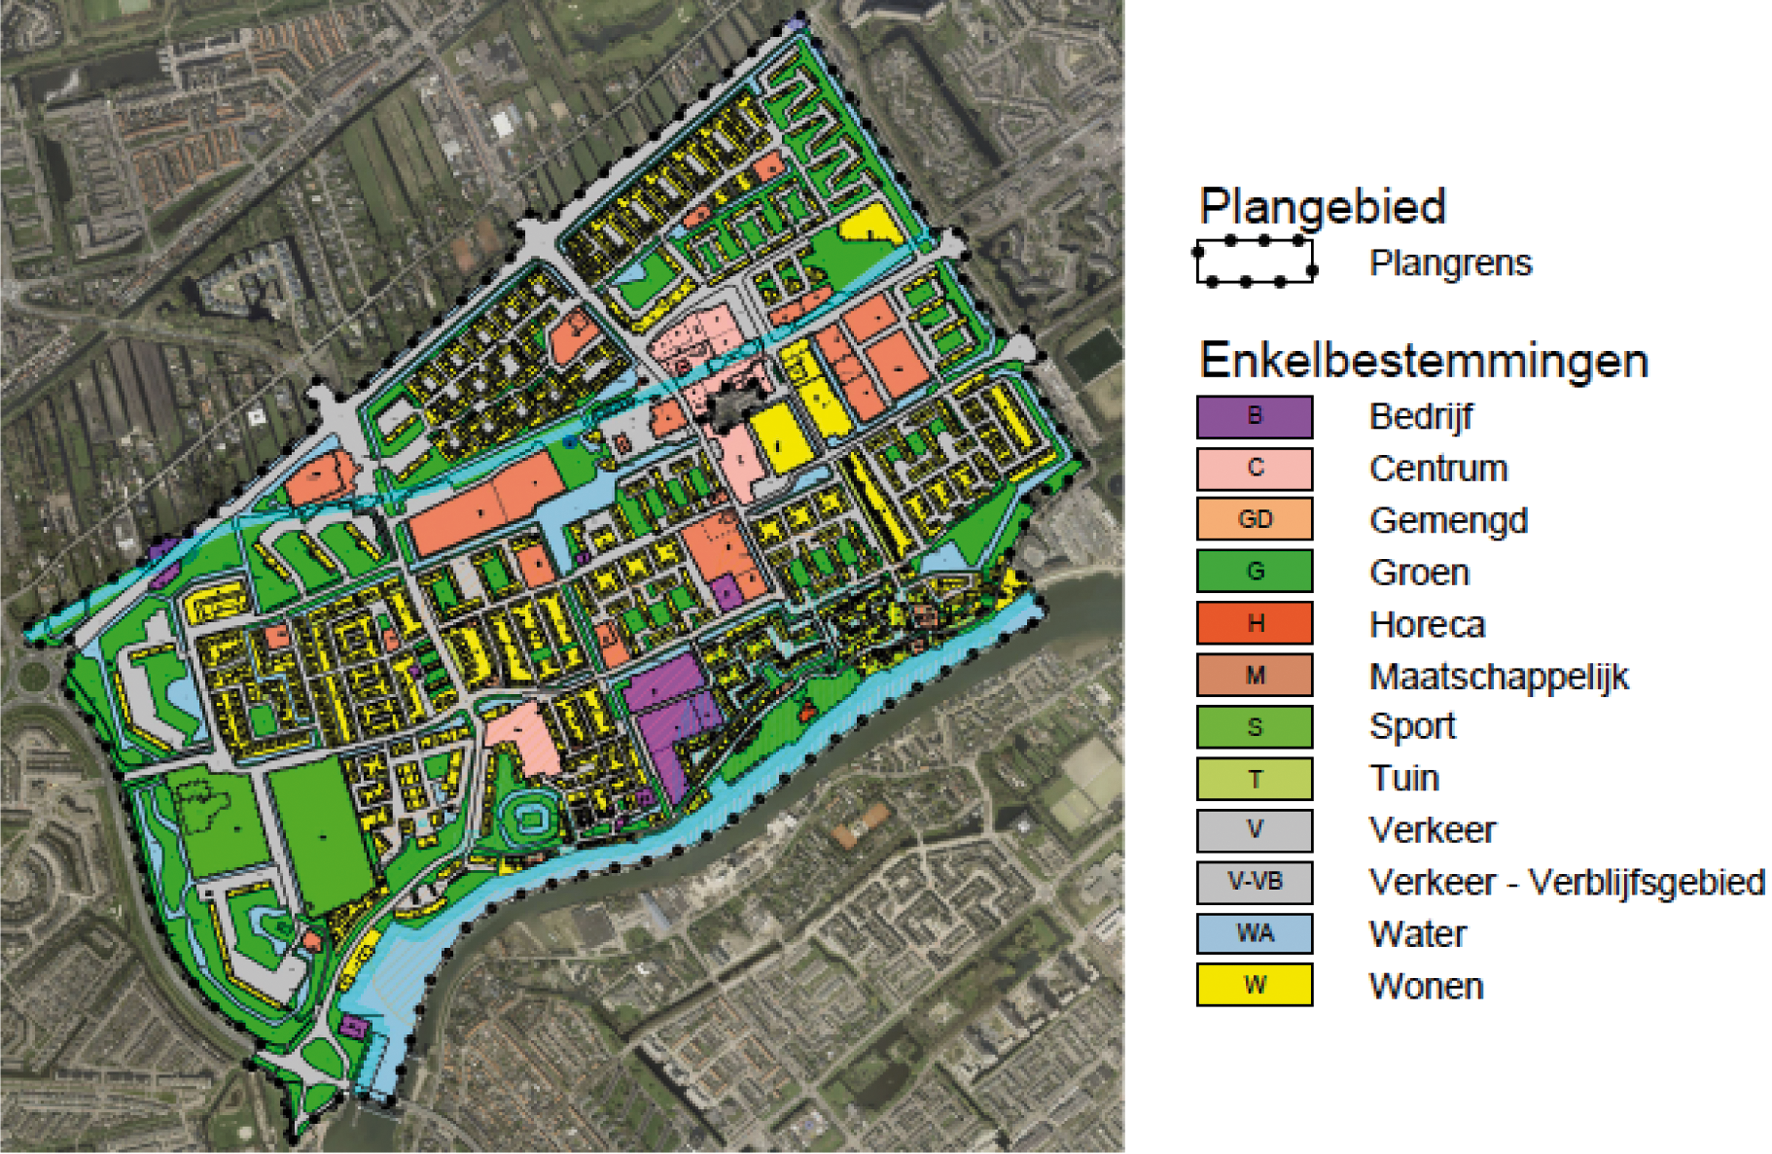 Plangebied Middelwatering inclusief de bestemmingen: